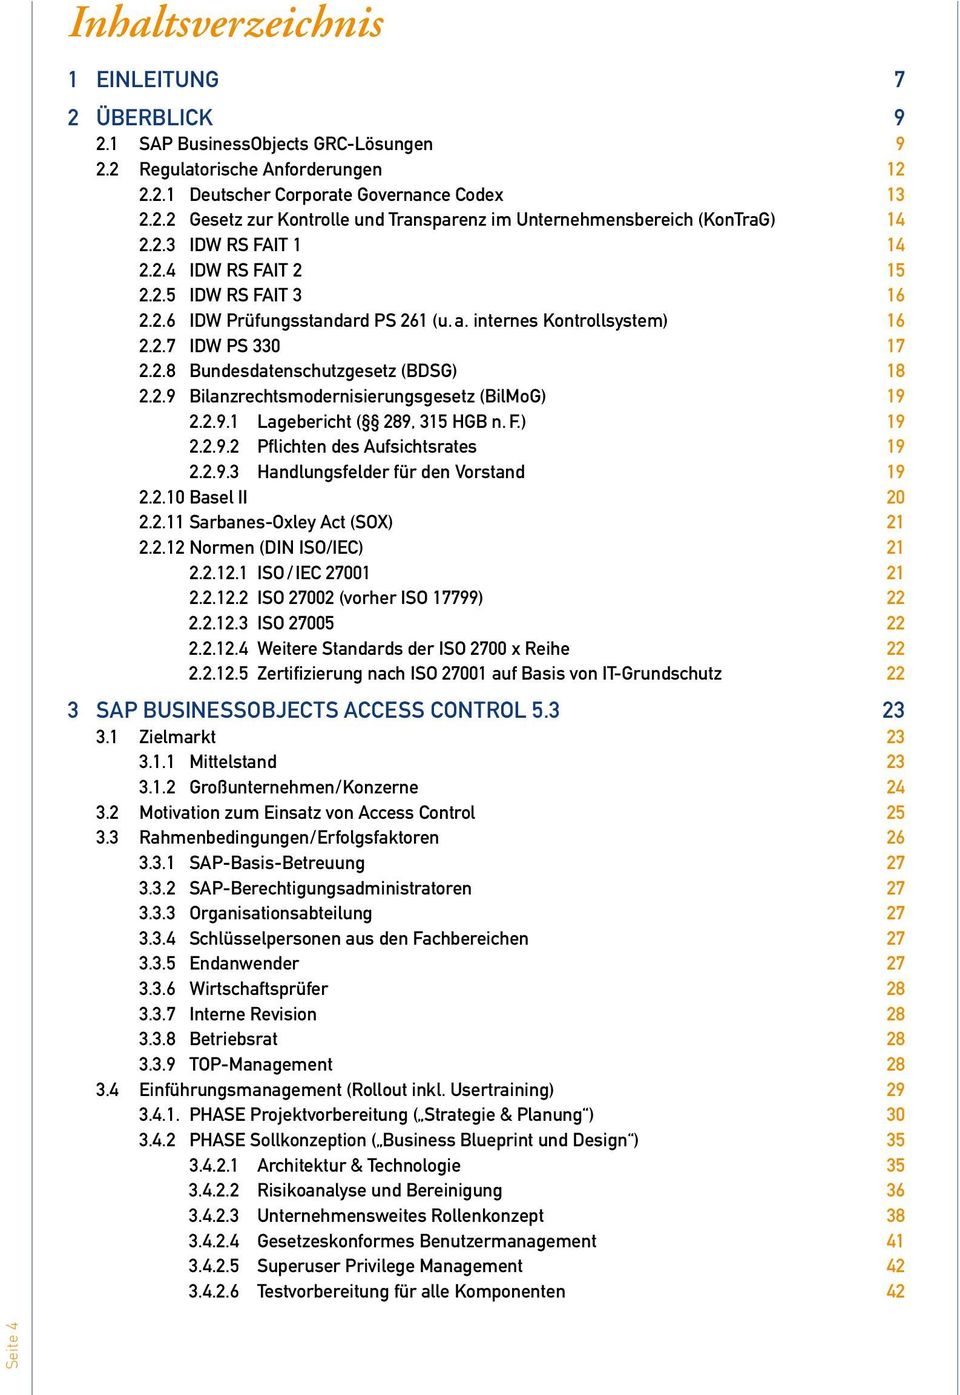 2.9.1 Lagebericht ( 289, 315 HGB n. F.) 19 2.2.9.2 Pflichten des Aufsichtsrates 19 2.2.9.3 Handlungsfelder für den Vorstand 19 2.2.10 Basel ii 20 2.2.11 Sarbanes-Oxley Act (SOX) 21 2.2.12 Normen (DIN ISO/IEC) 21 2.